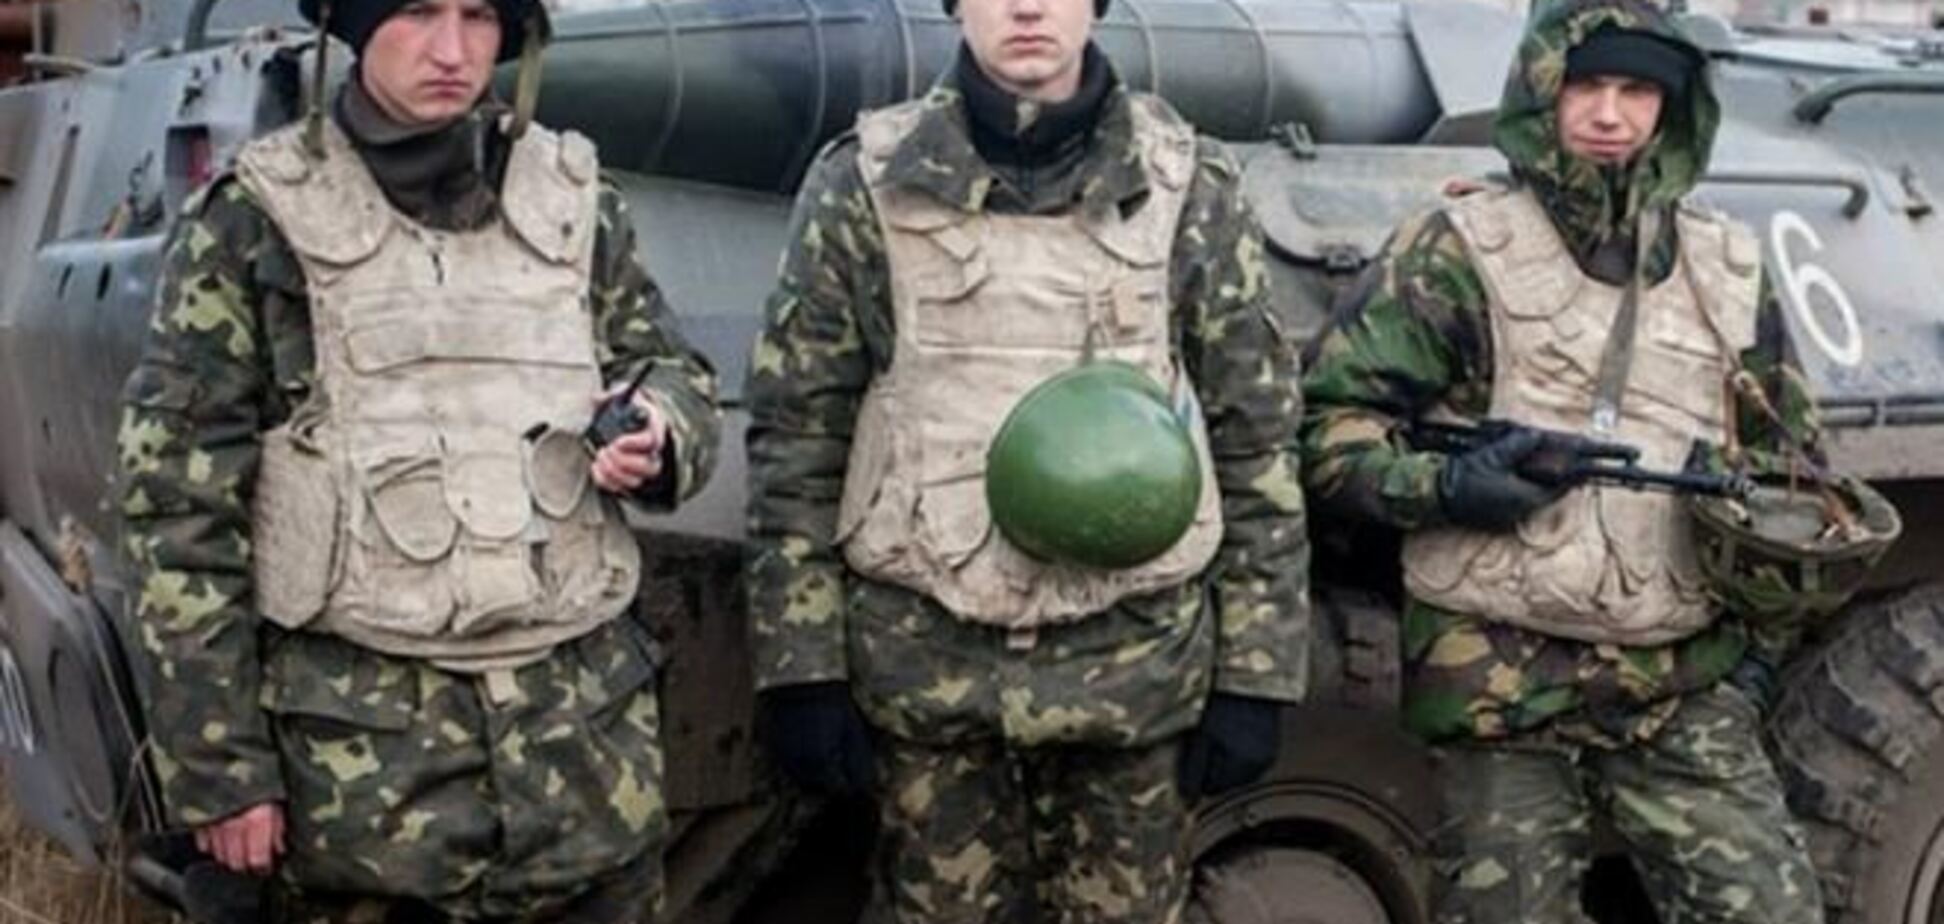 Військові, які залишаться в Криму, можуть служити в армії РФ - Генштаб ВС РФ